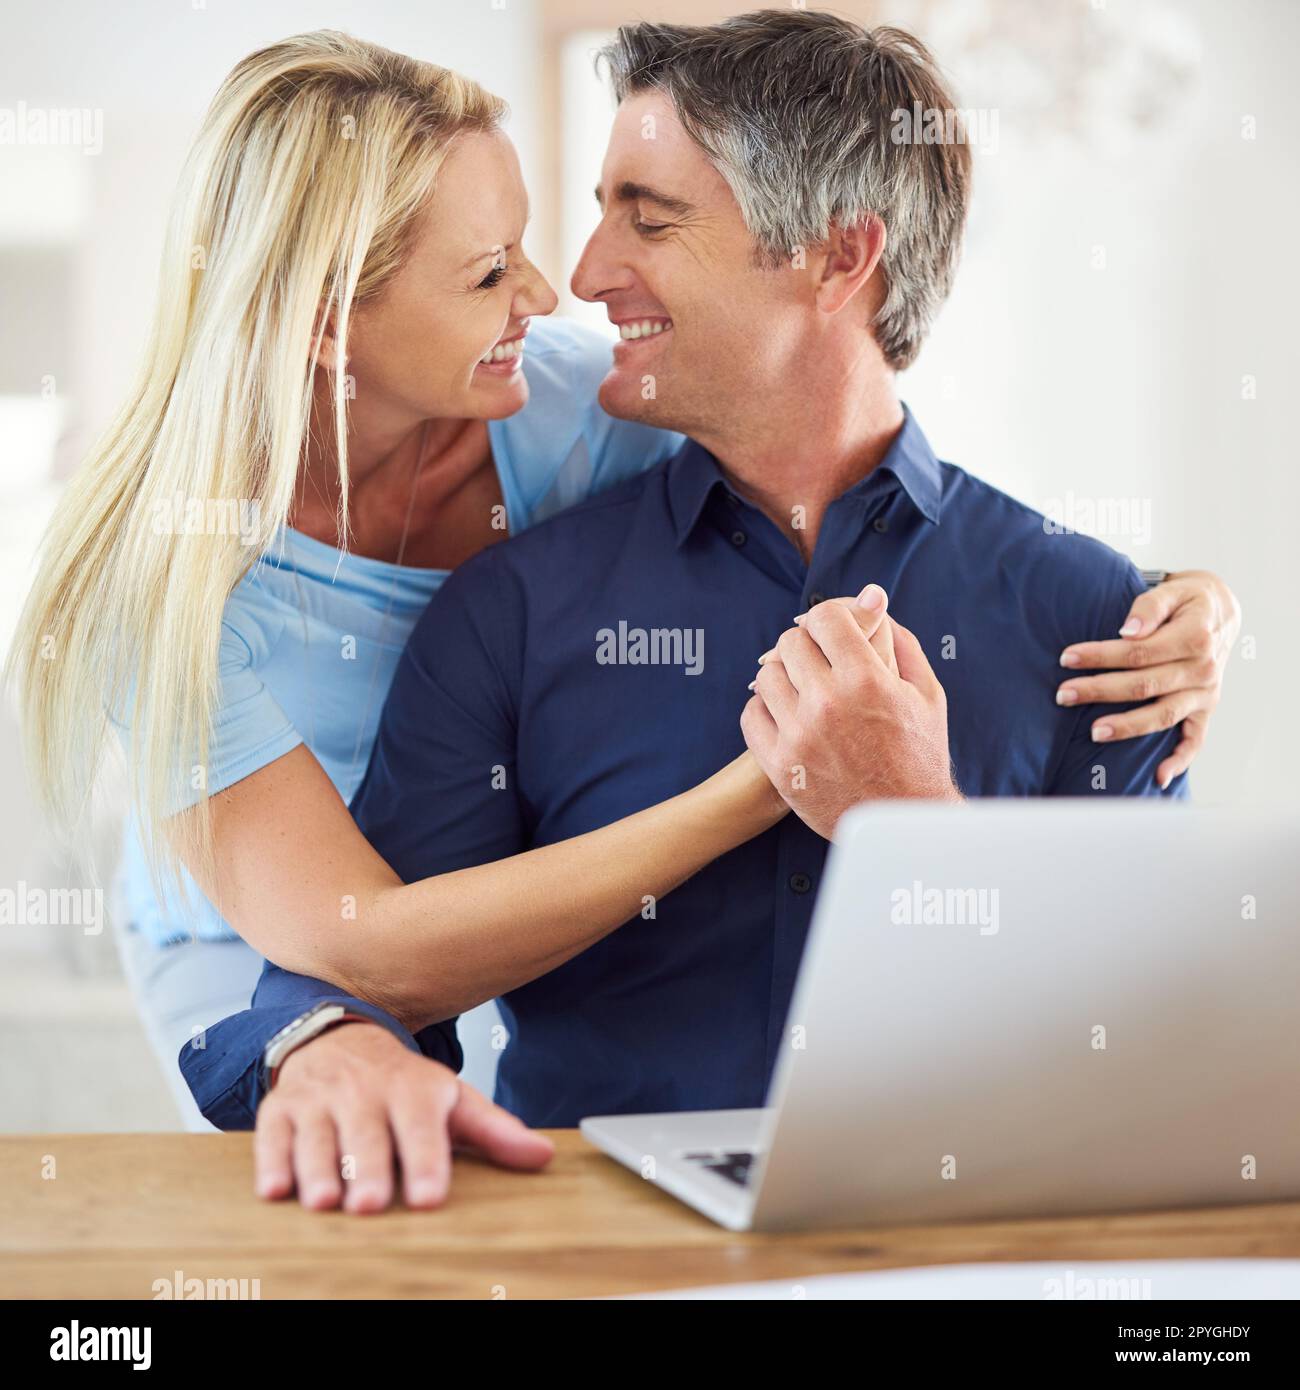 Insieme per sempre. una donna matura e attraente che abbraccia il suo bel marito maturo mentre usa un computer portatile in casa. Foto Stock